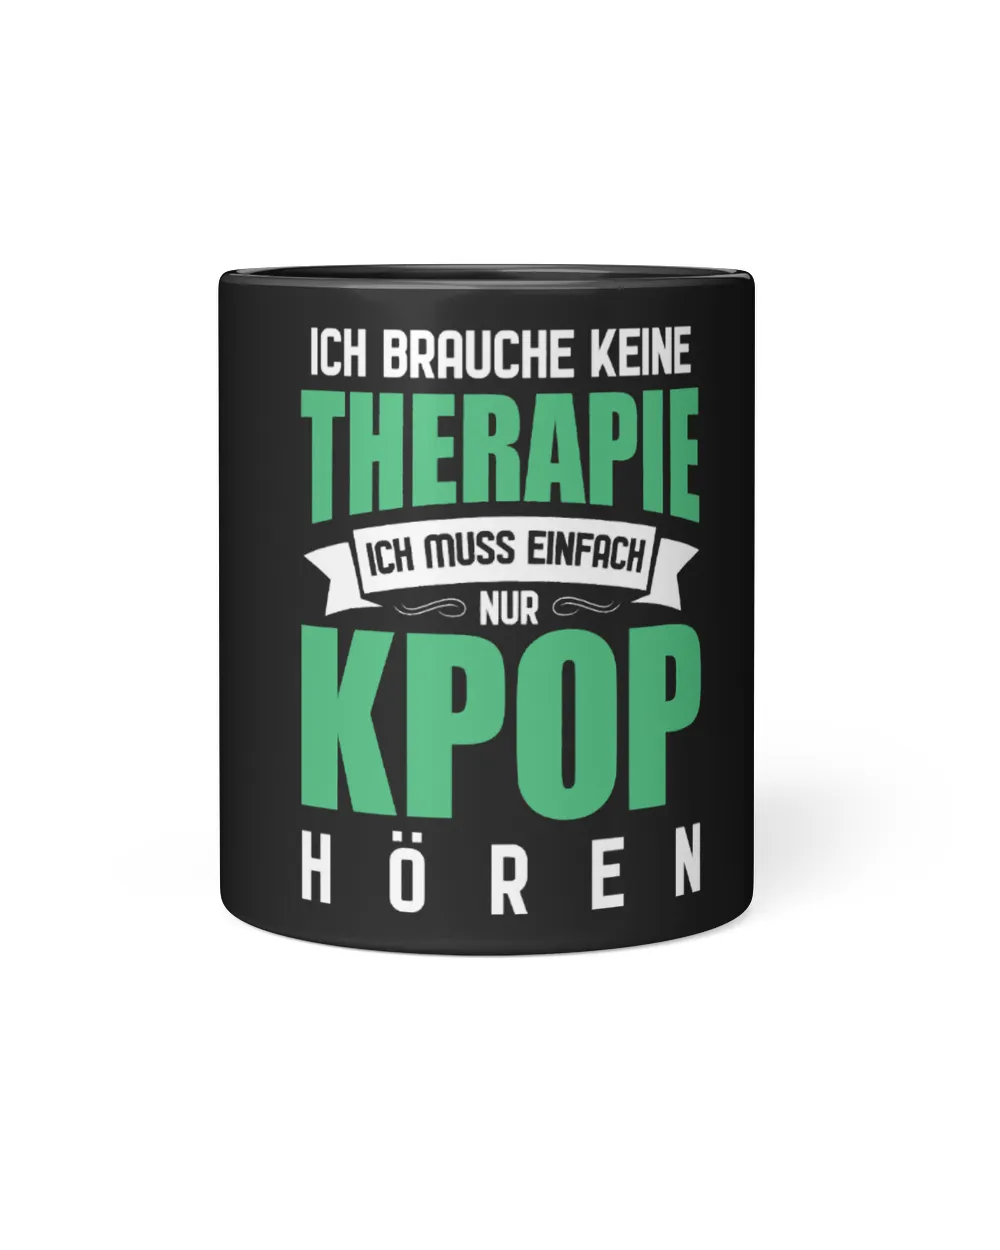 KPop Korea South Korea Genre Kpop Merch Pop Music Pop Music